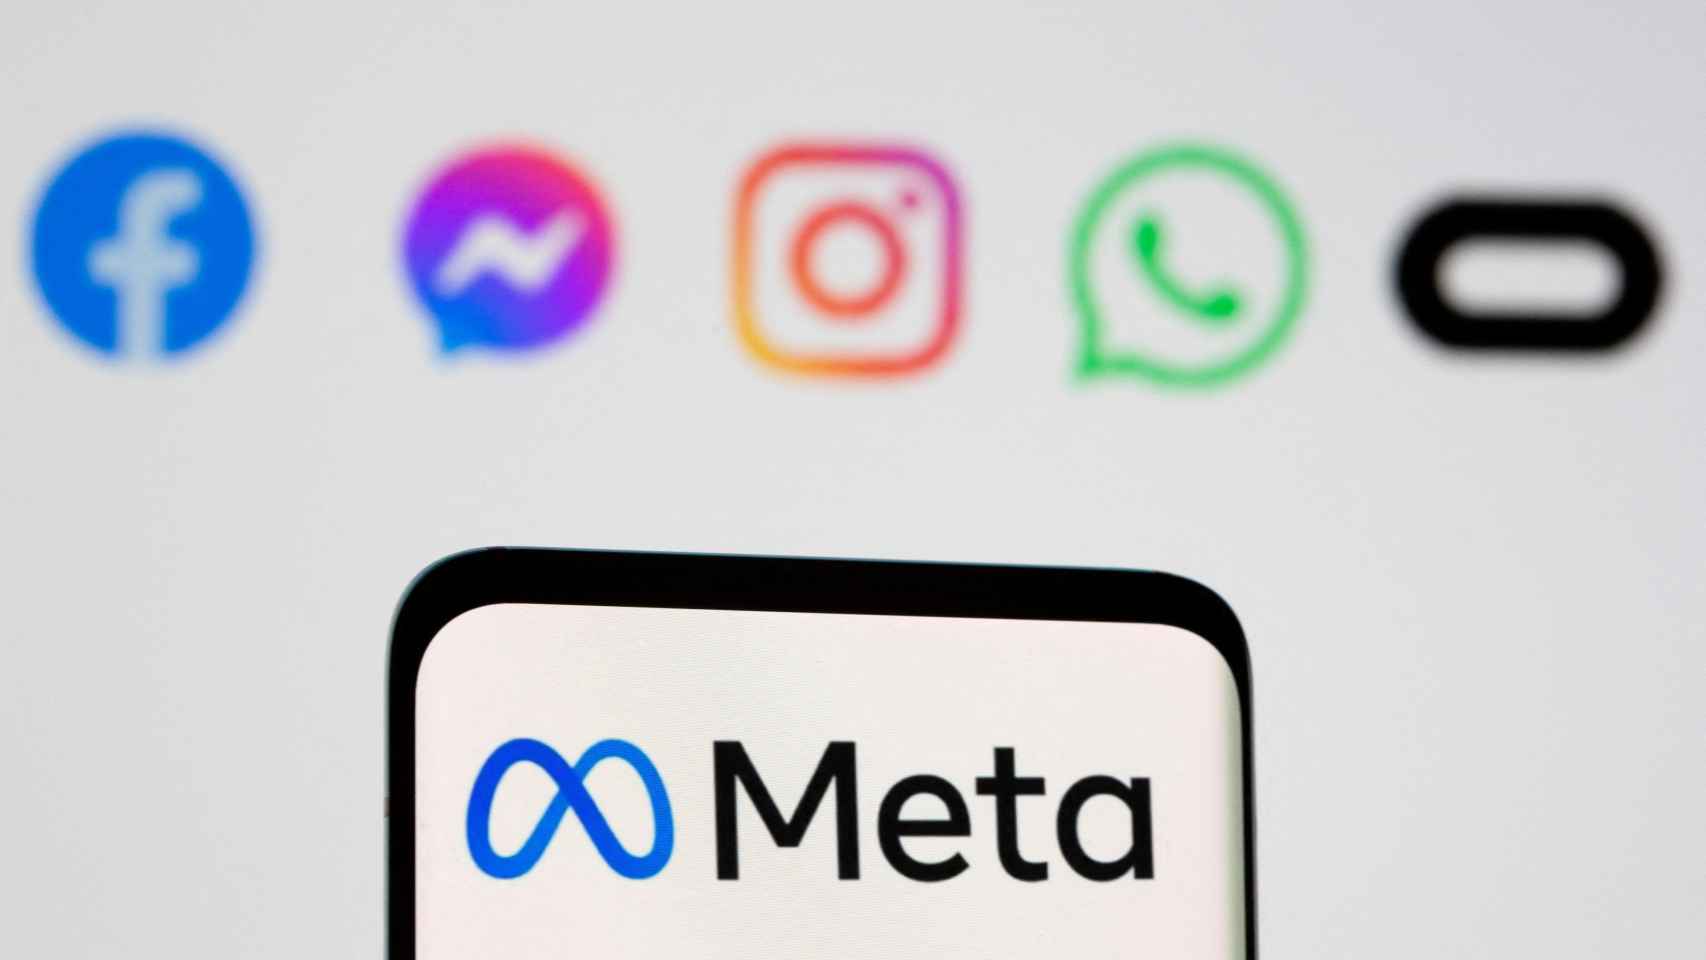 Logo de Meta en la pantalla de un smartpone delante de los logos de Facebook, Messenger, Instagram, WhatsApp y Oculus.